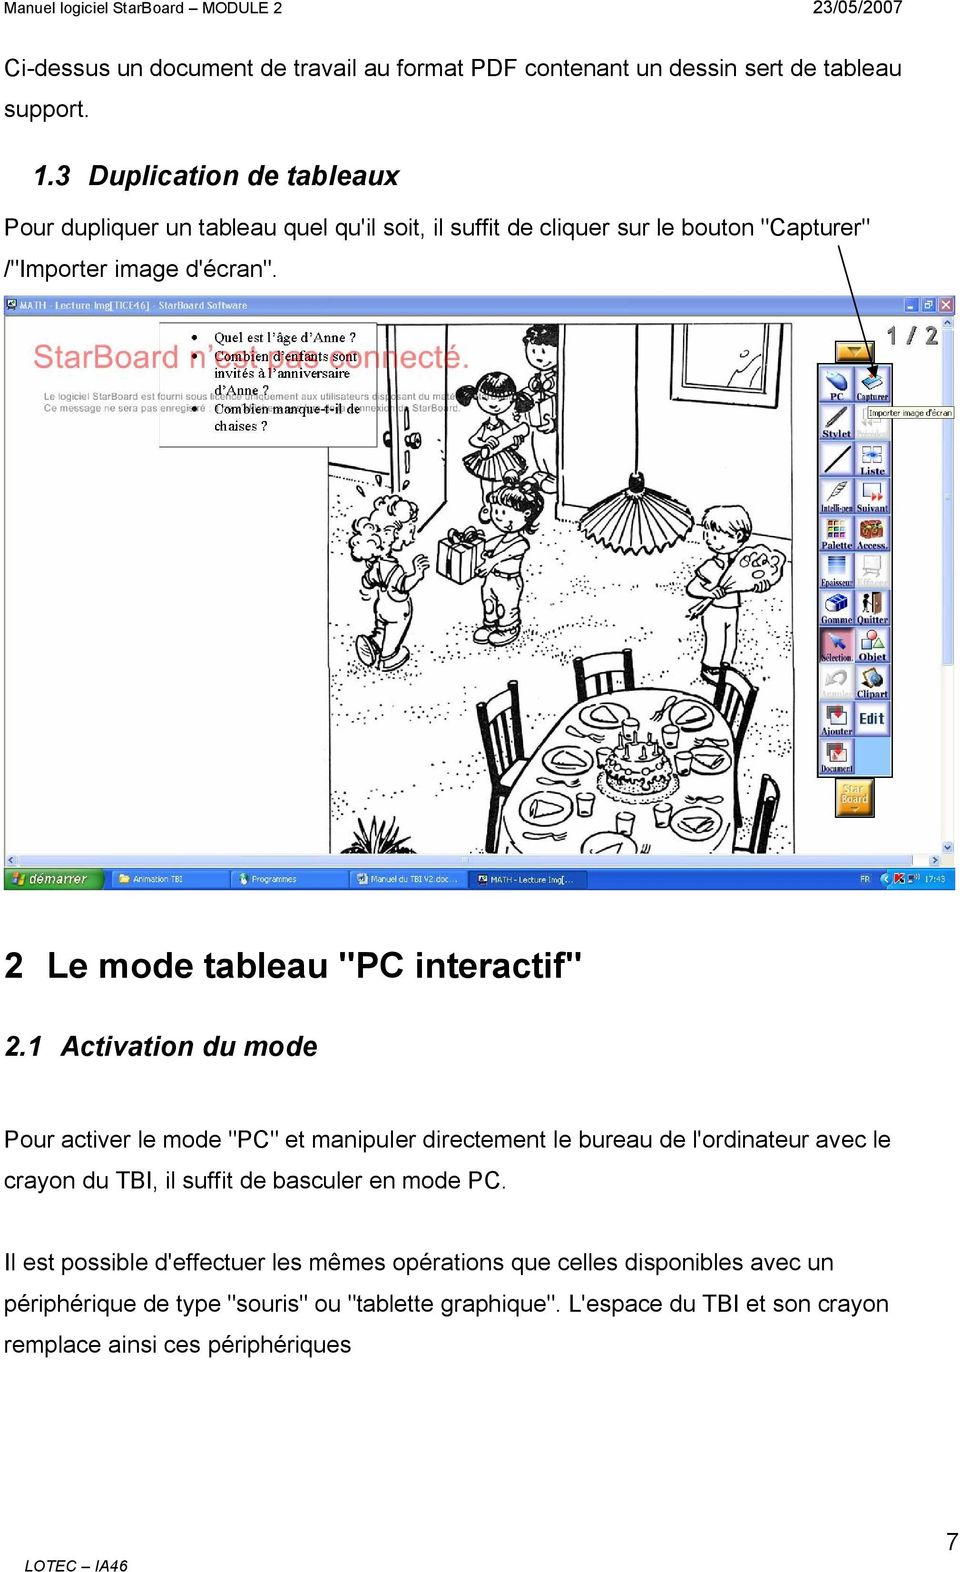 2 Le mode tableau "PC interactif" 2.